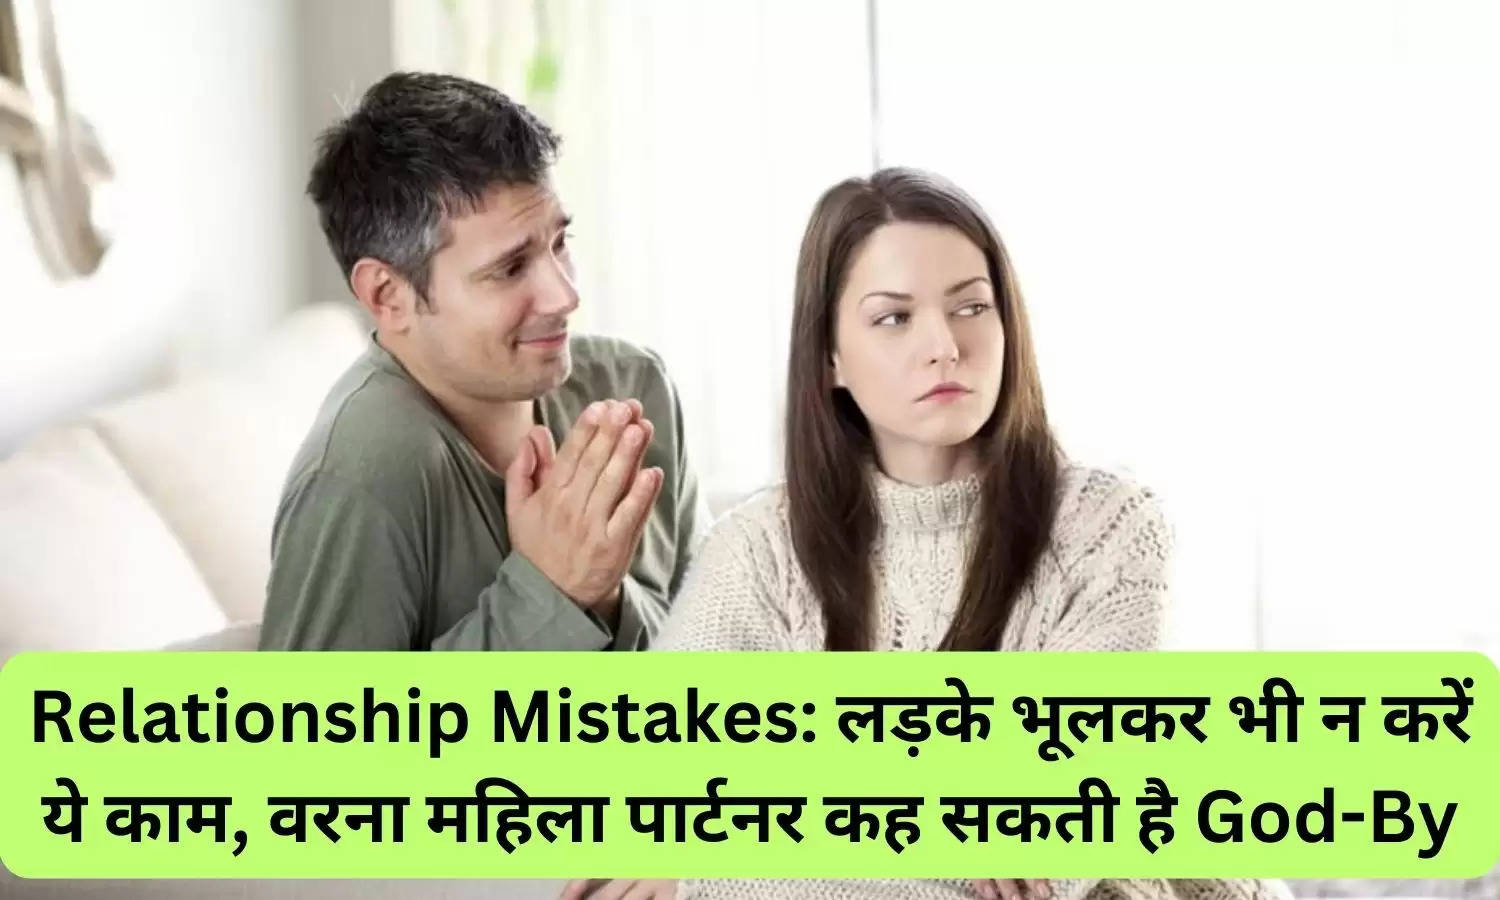 Relationship Mistakes: लड़के भूलकर भी न करें ये काम, वरना महिला पार्टनर कह सकती है God-By